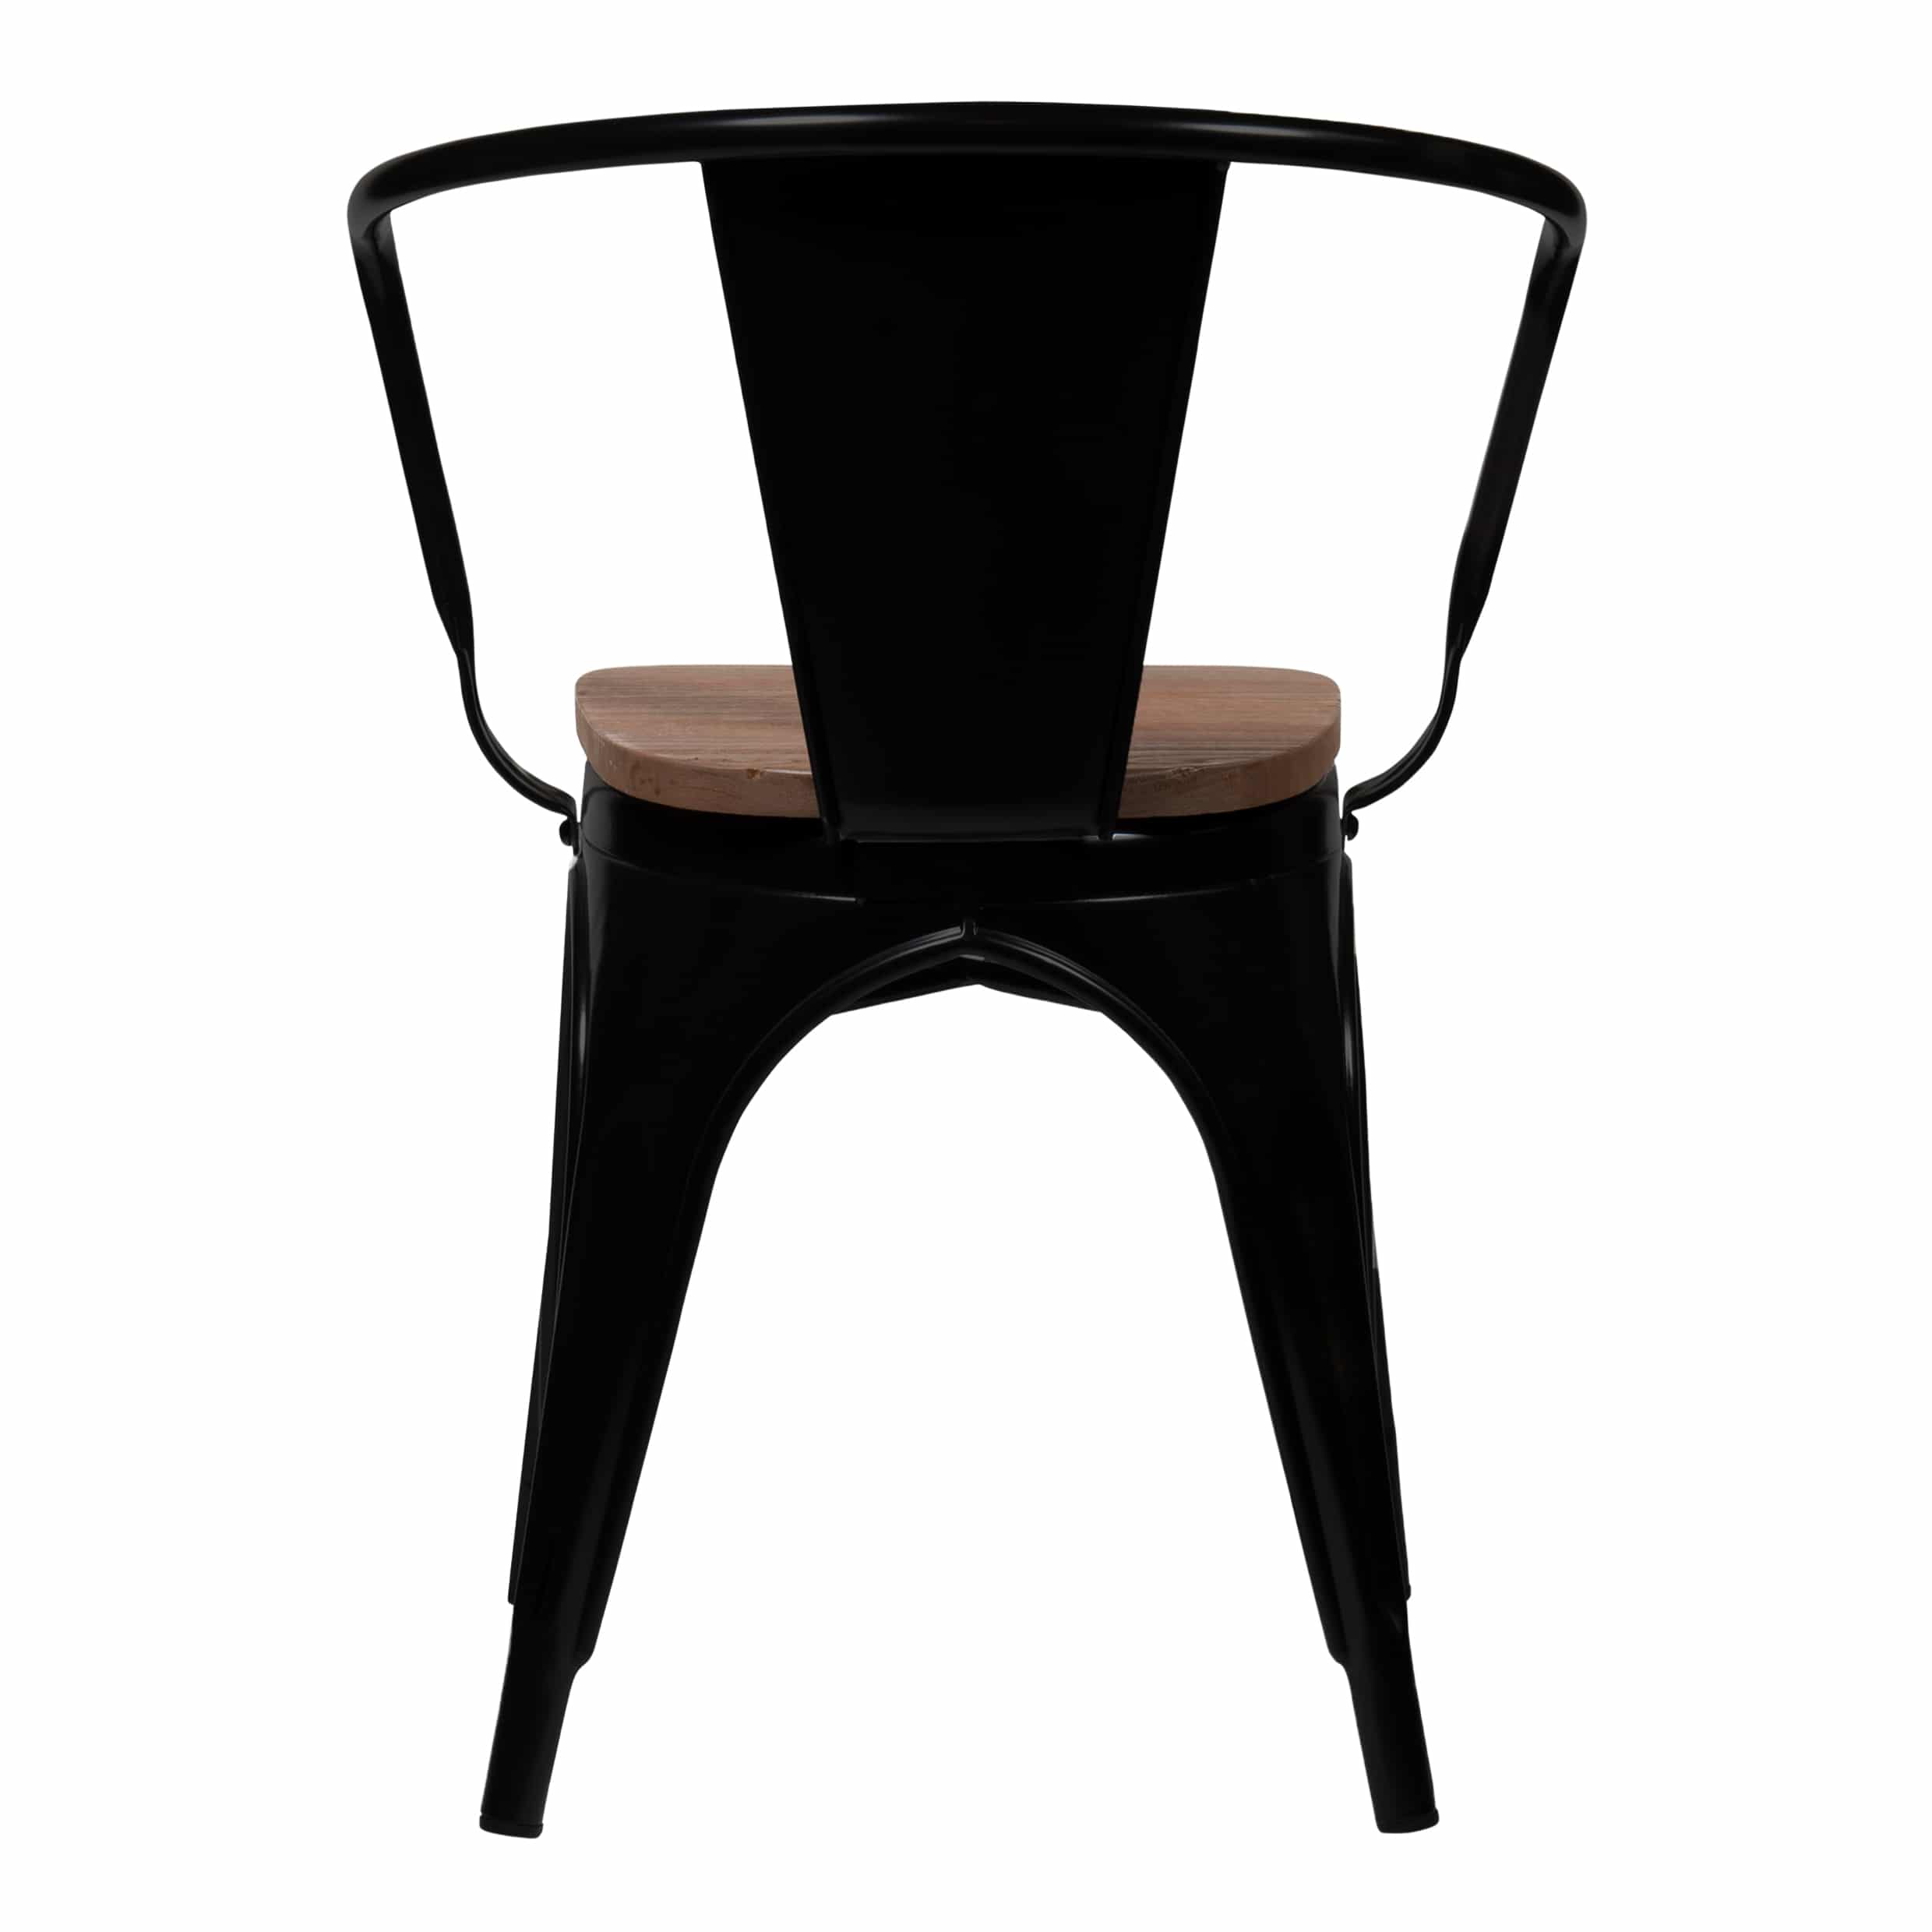 Eetkamer stoel van quvio in het zwart met donkerhout